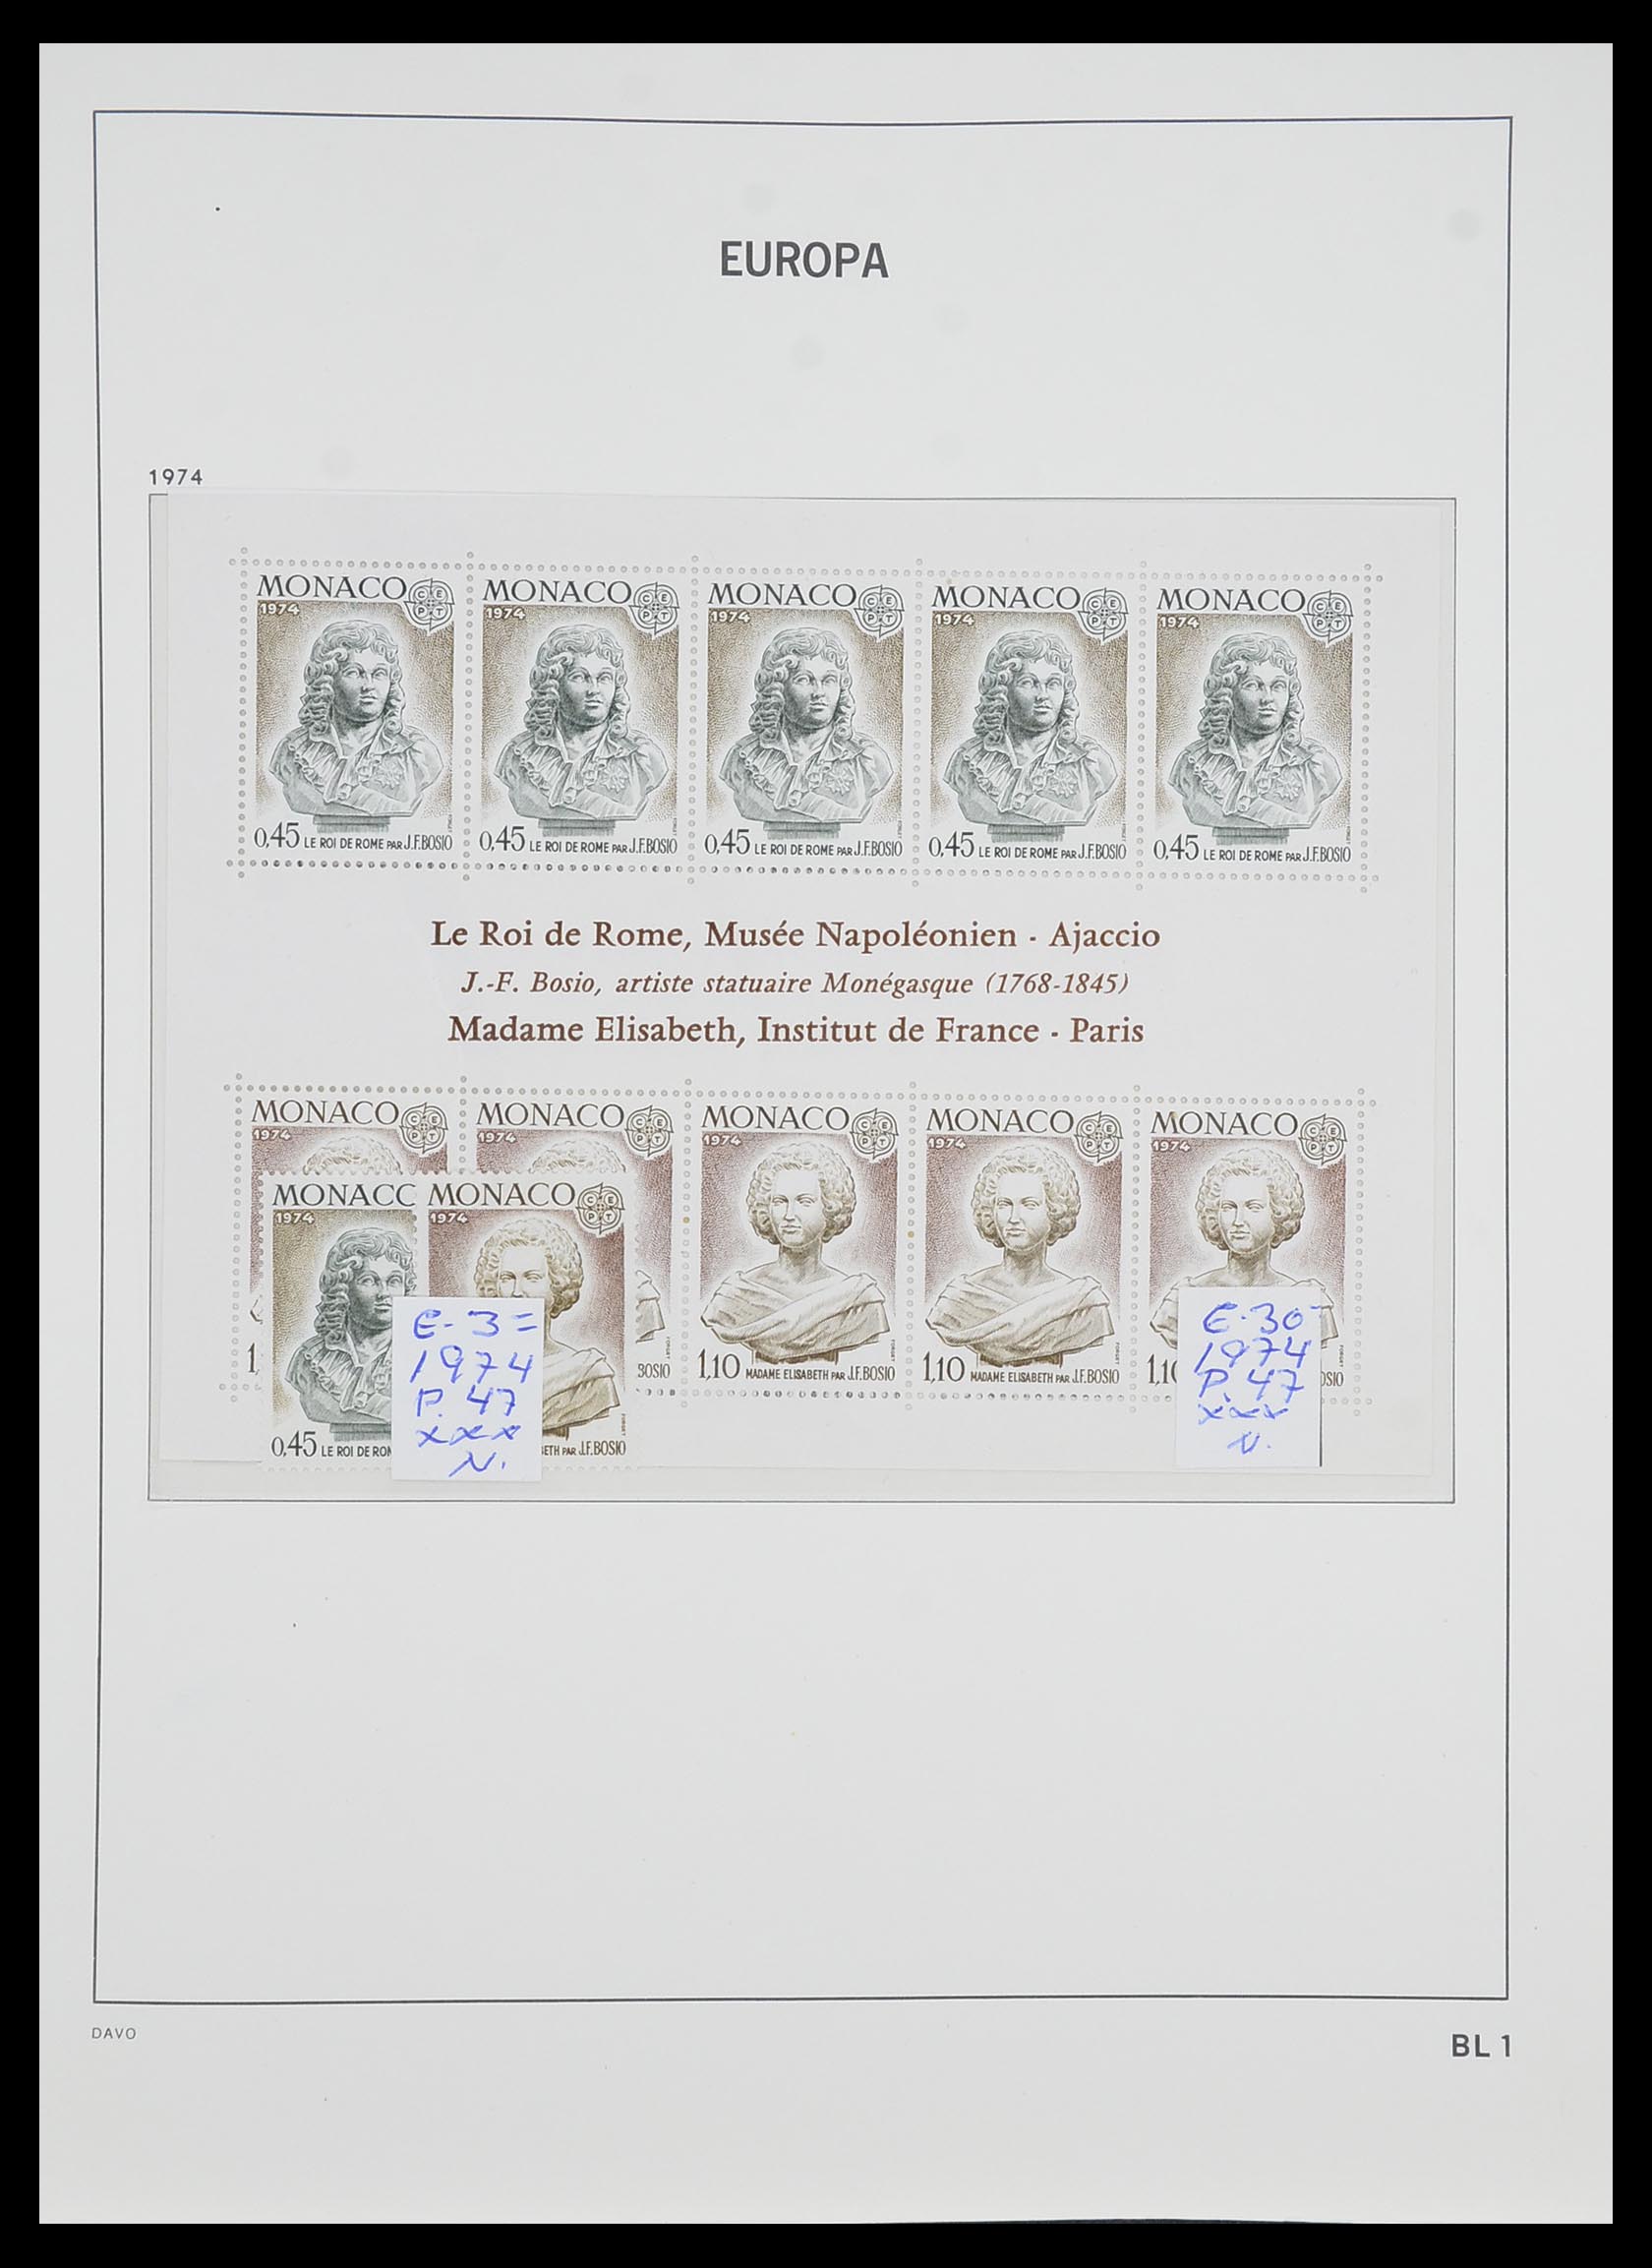 33985 001 - Stamp collection 33985 Europa CEPT souvenir sheets 1974-2014.